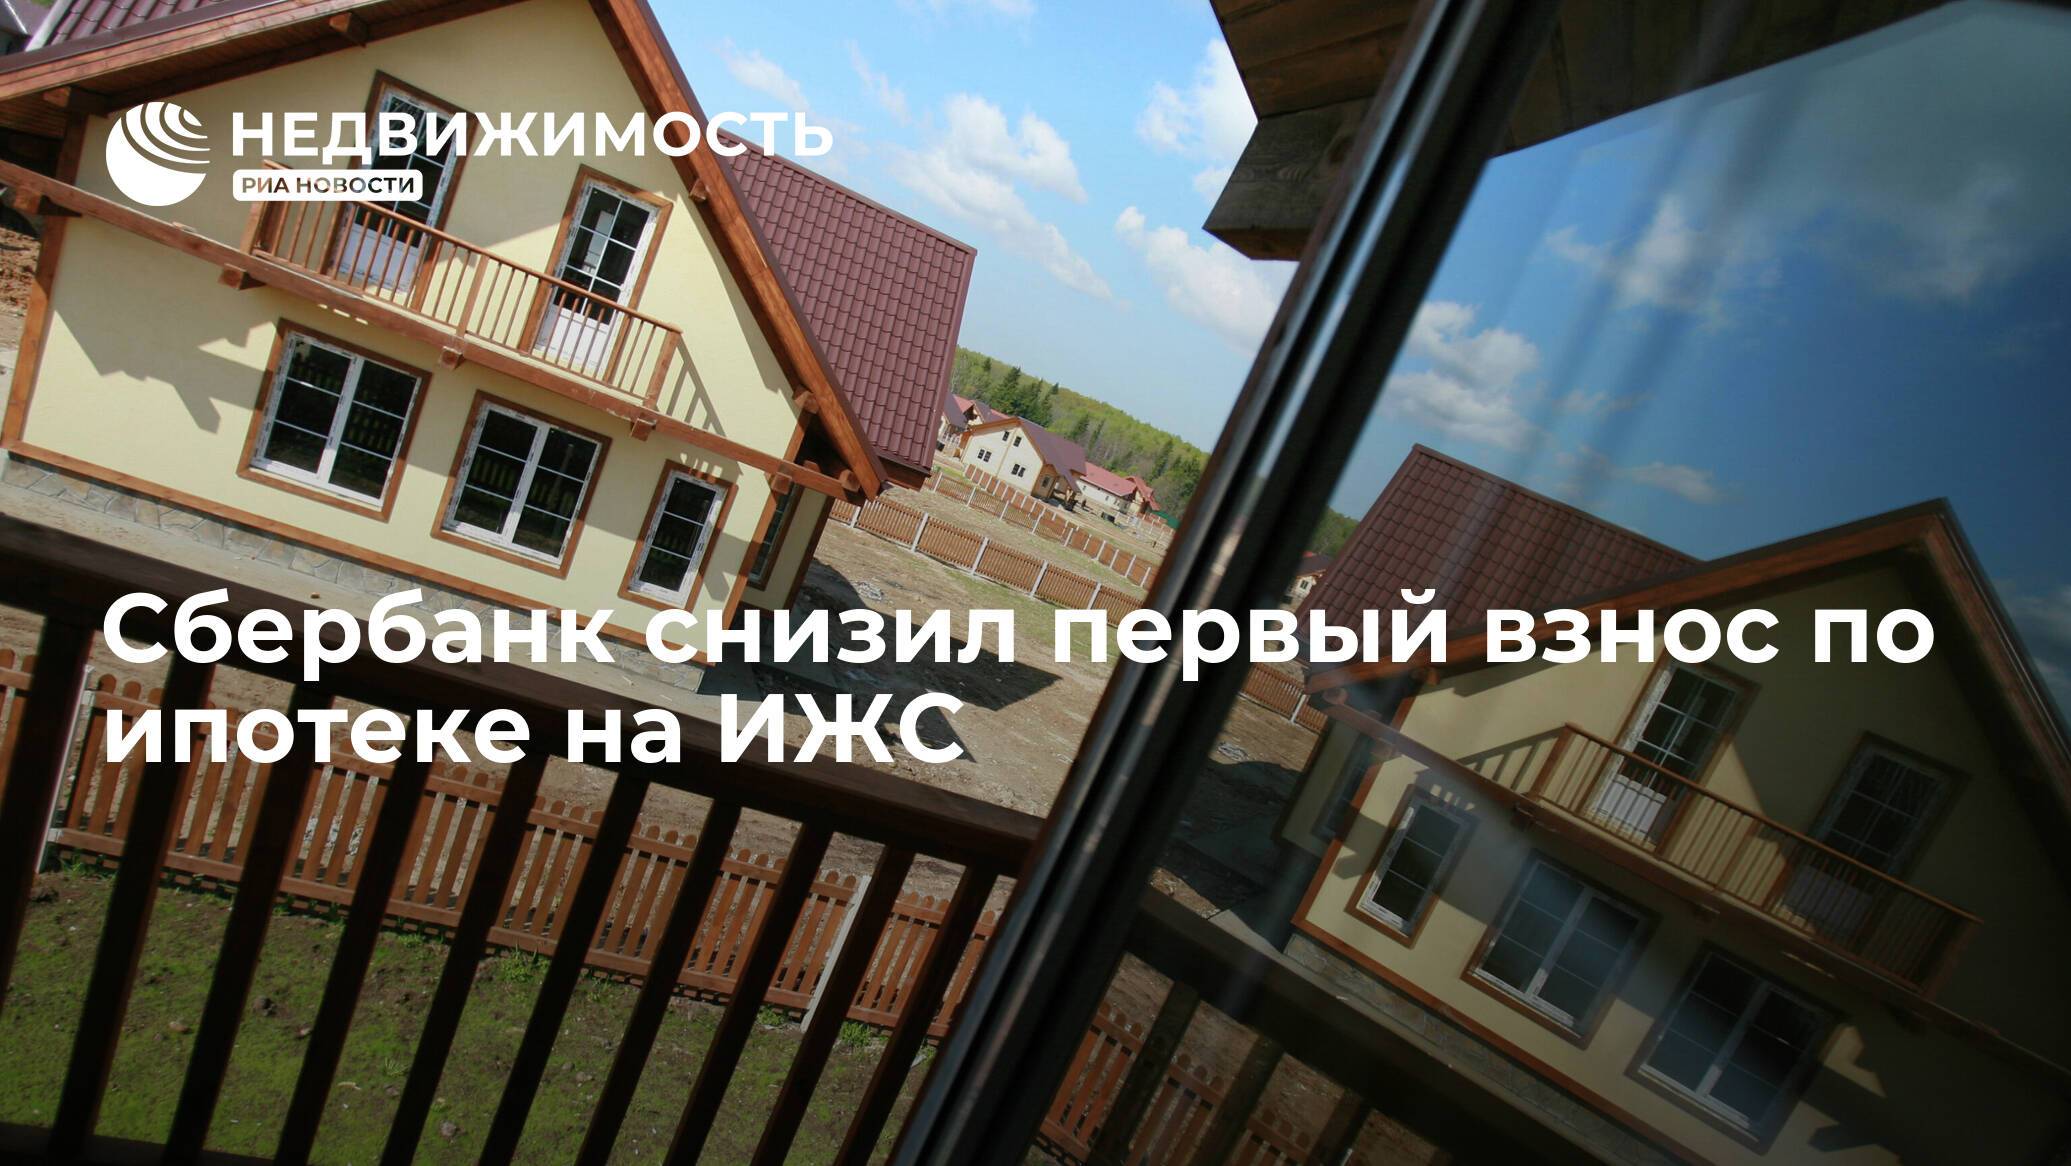 Владимир путин поручил выдавать больше ипотек. как банки выполняют поручение президента?